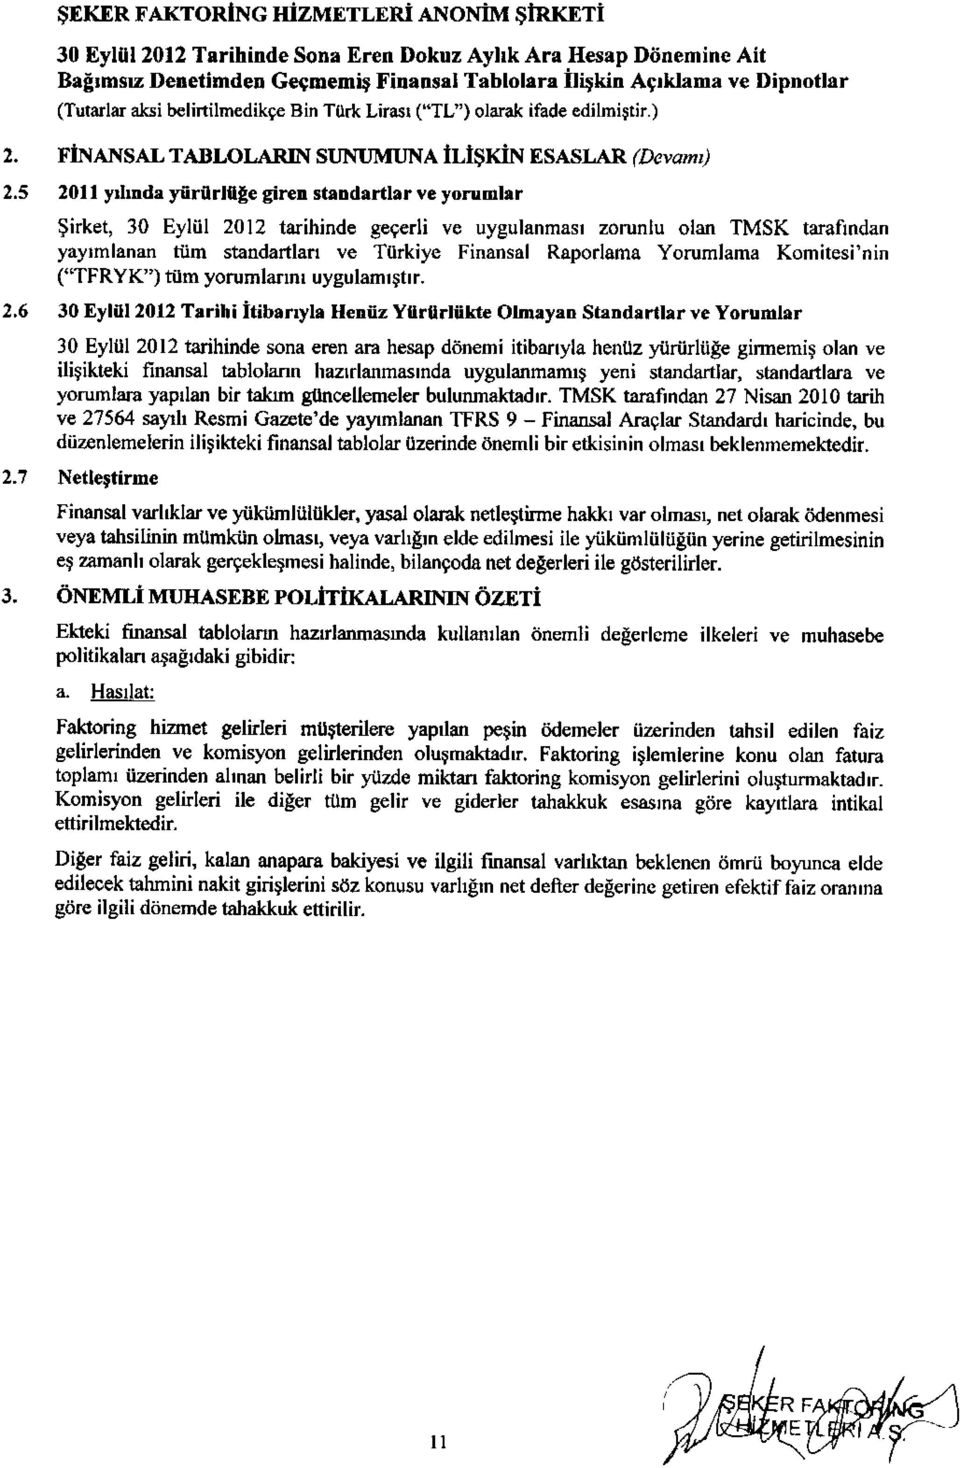 r ve yorumhr $irket, 30 Eyliil 2012 tarihinde geferli ve uygulsnmasr zorunlu olan TMSK tarafindan yayrmlanan tiim standartlafl ve Turkiye Finansal Raporlama Yorumlama Komitesi'nin ("TFRYK') tum